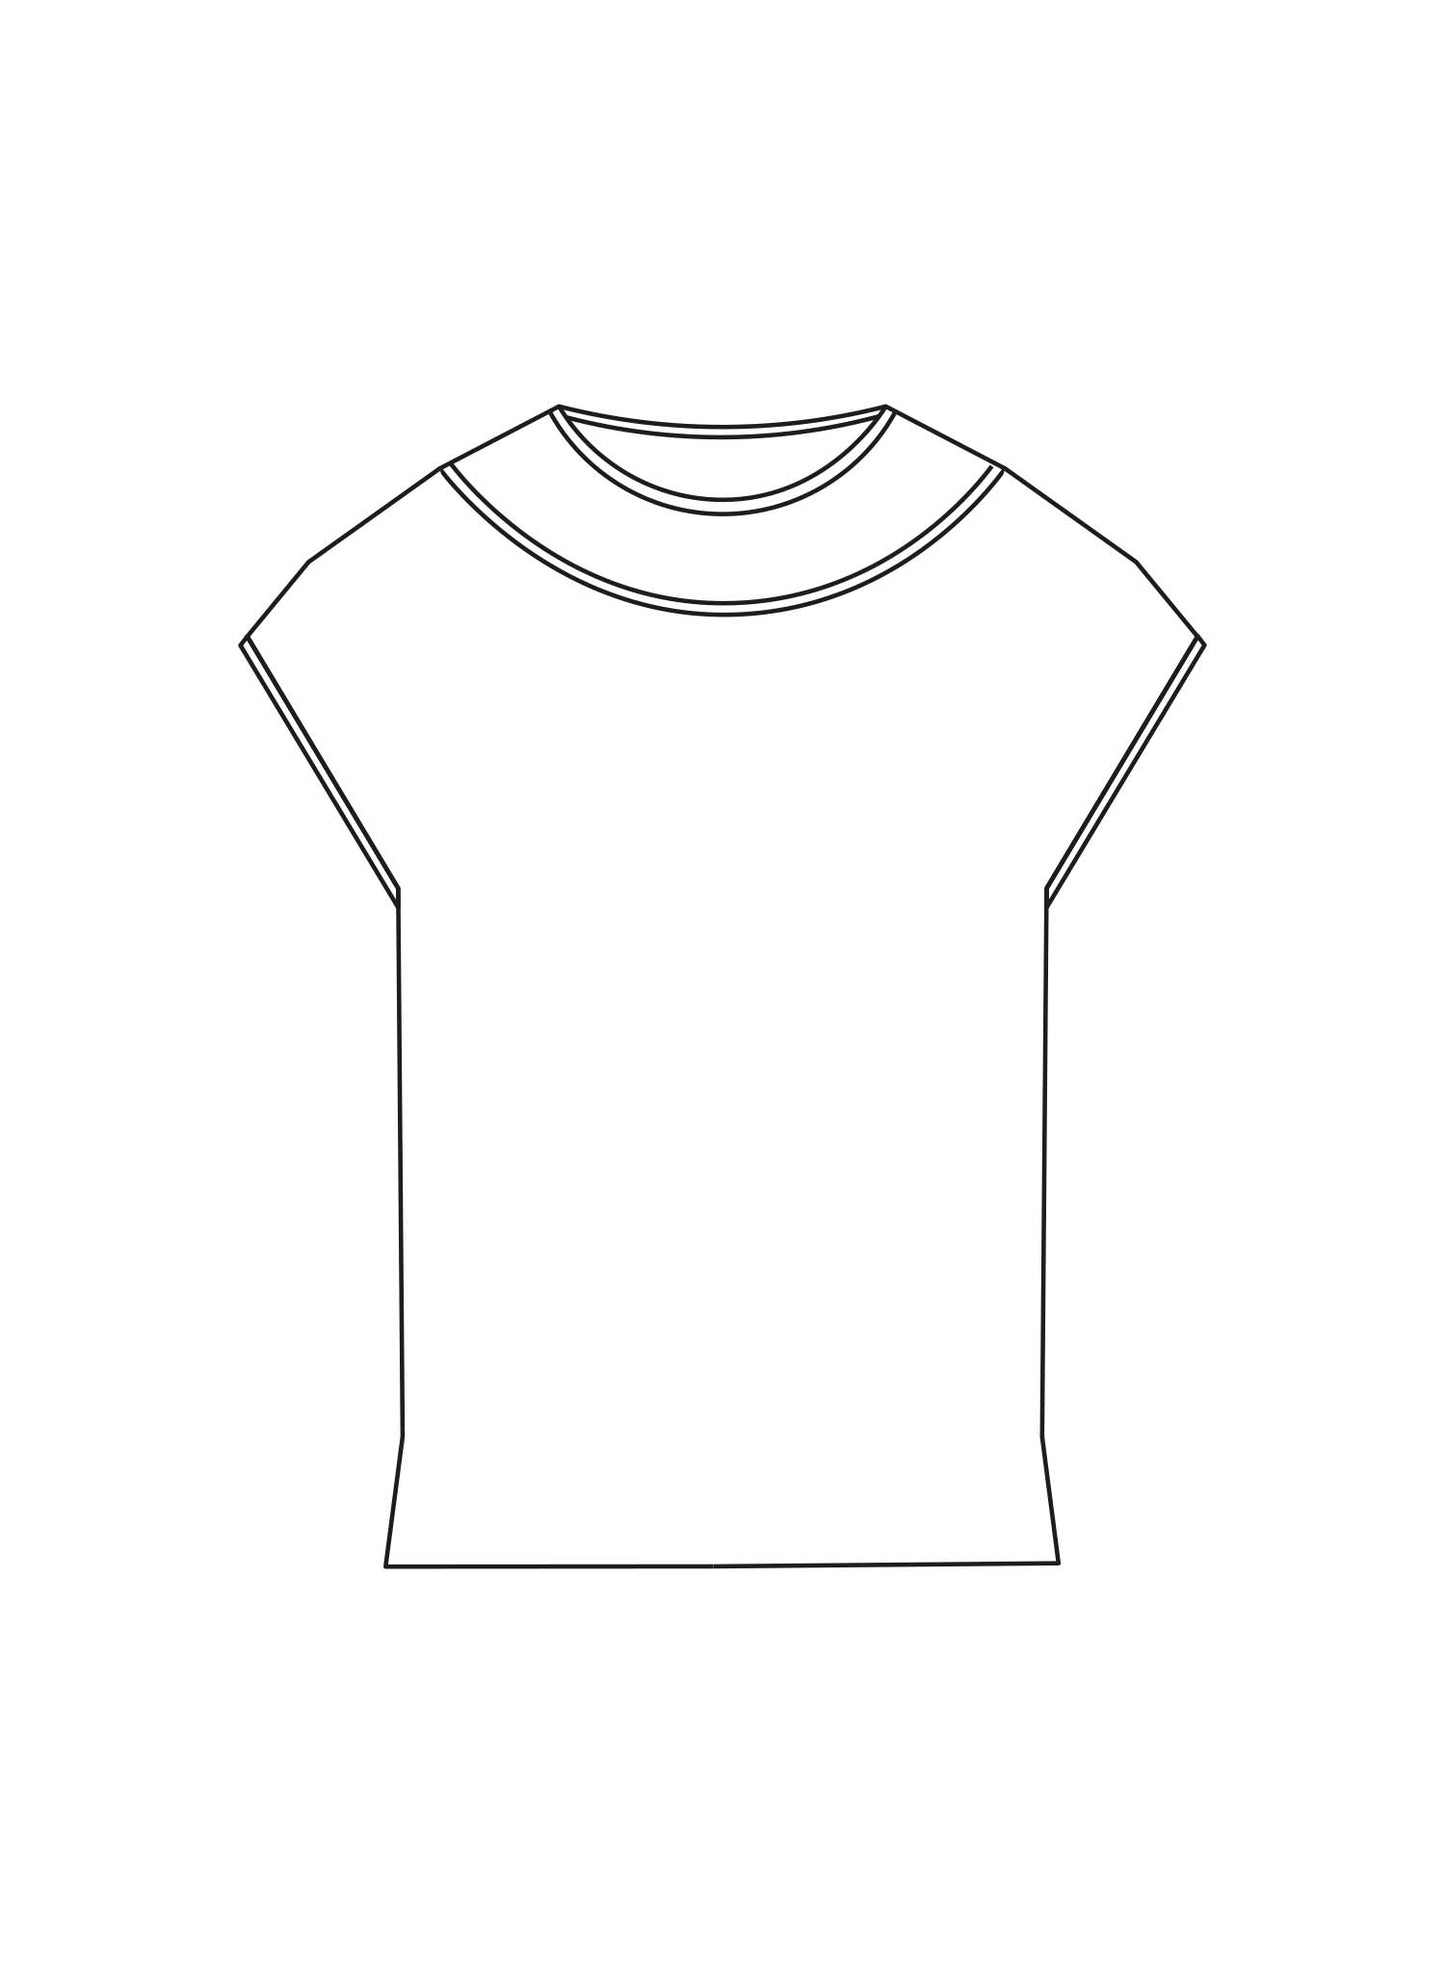 Drawing of Alberti T-shirt.